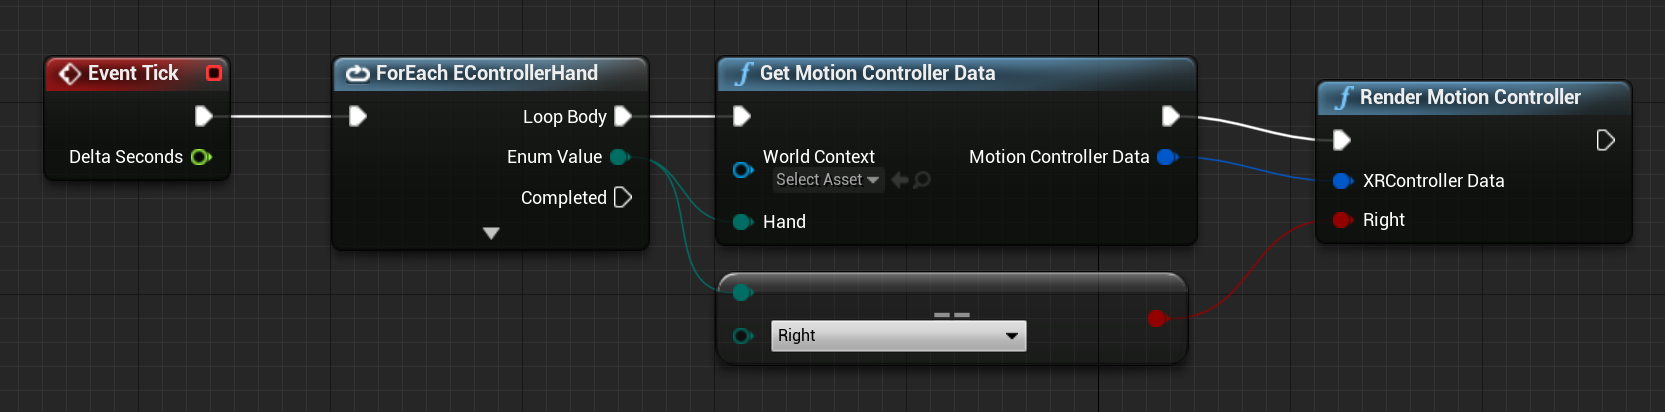 Blueprint für get motion controller data function connected to render motion controller function